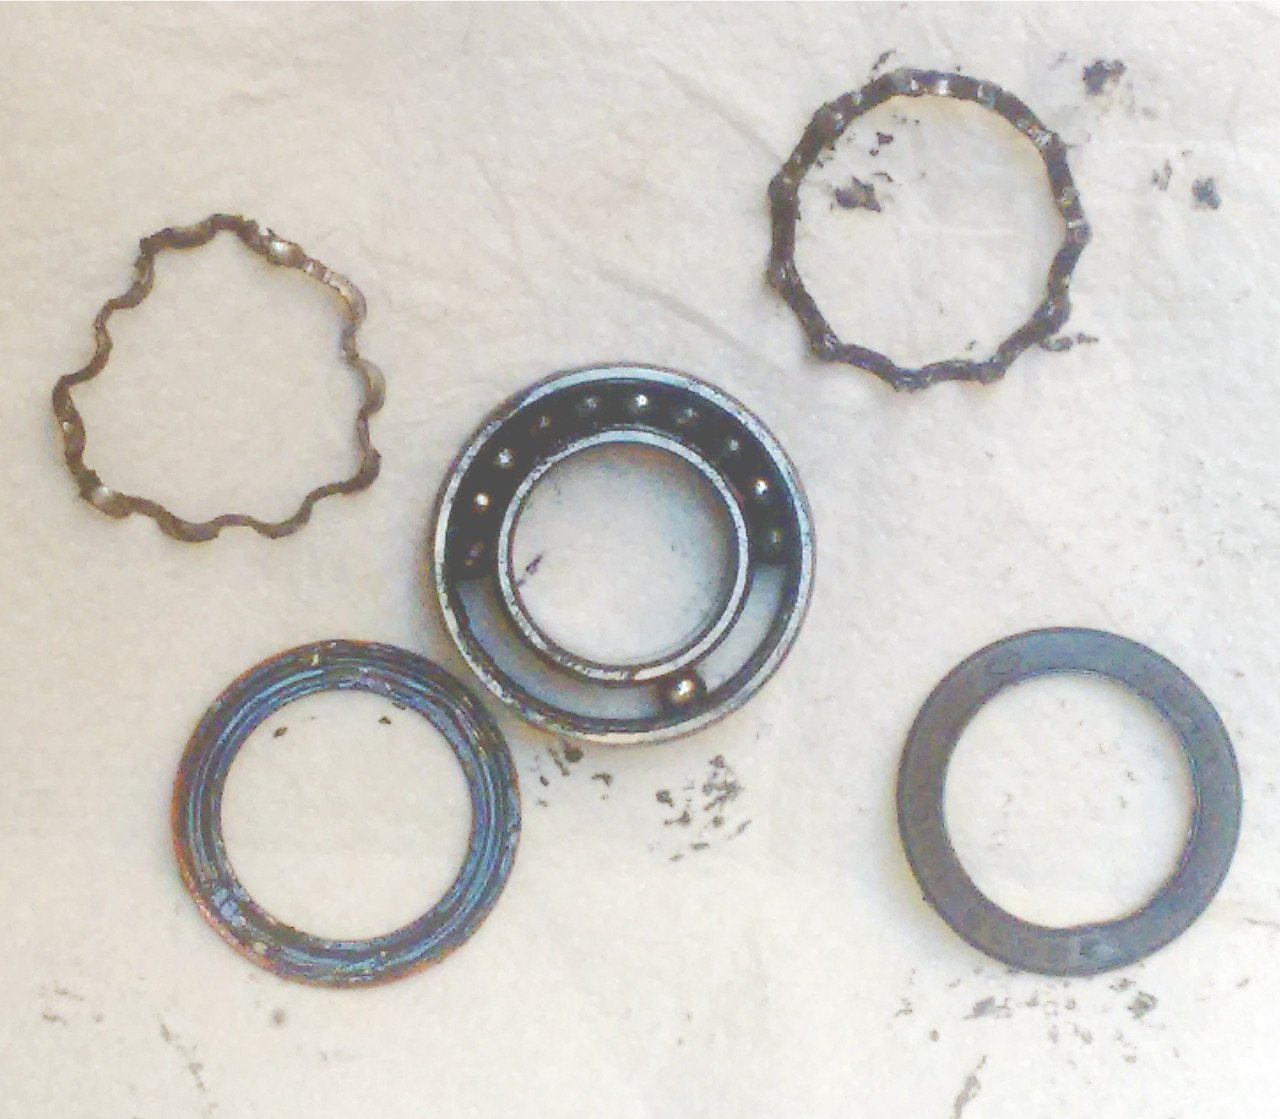 disassembled bearing